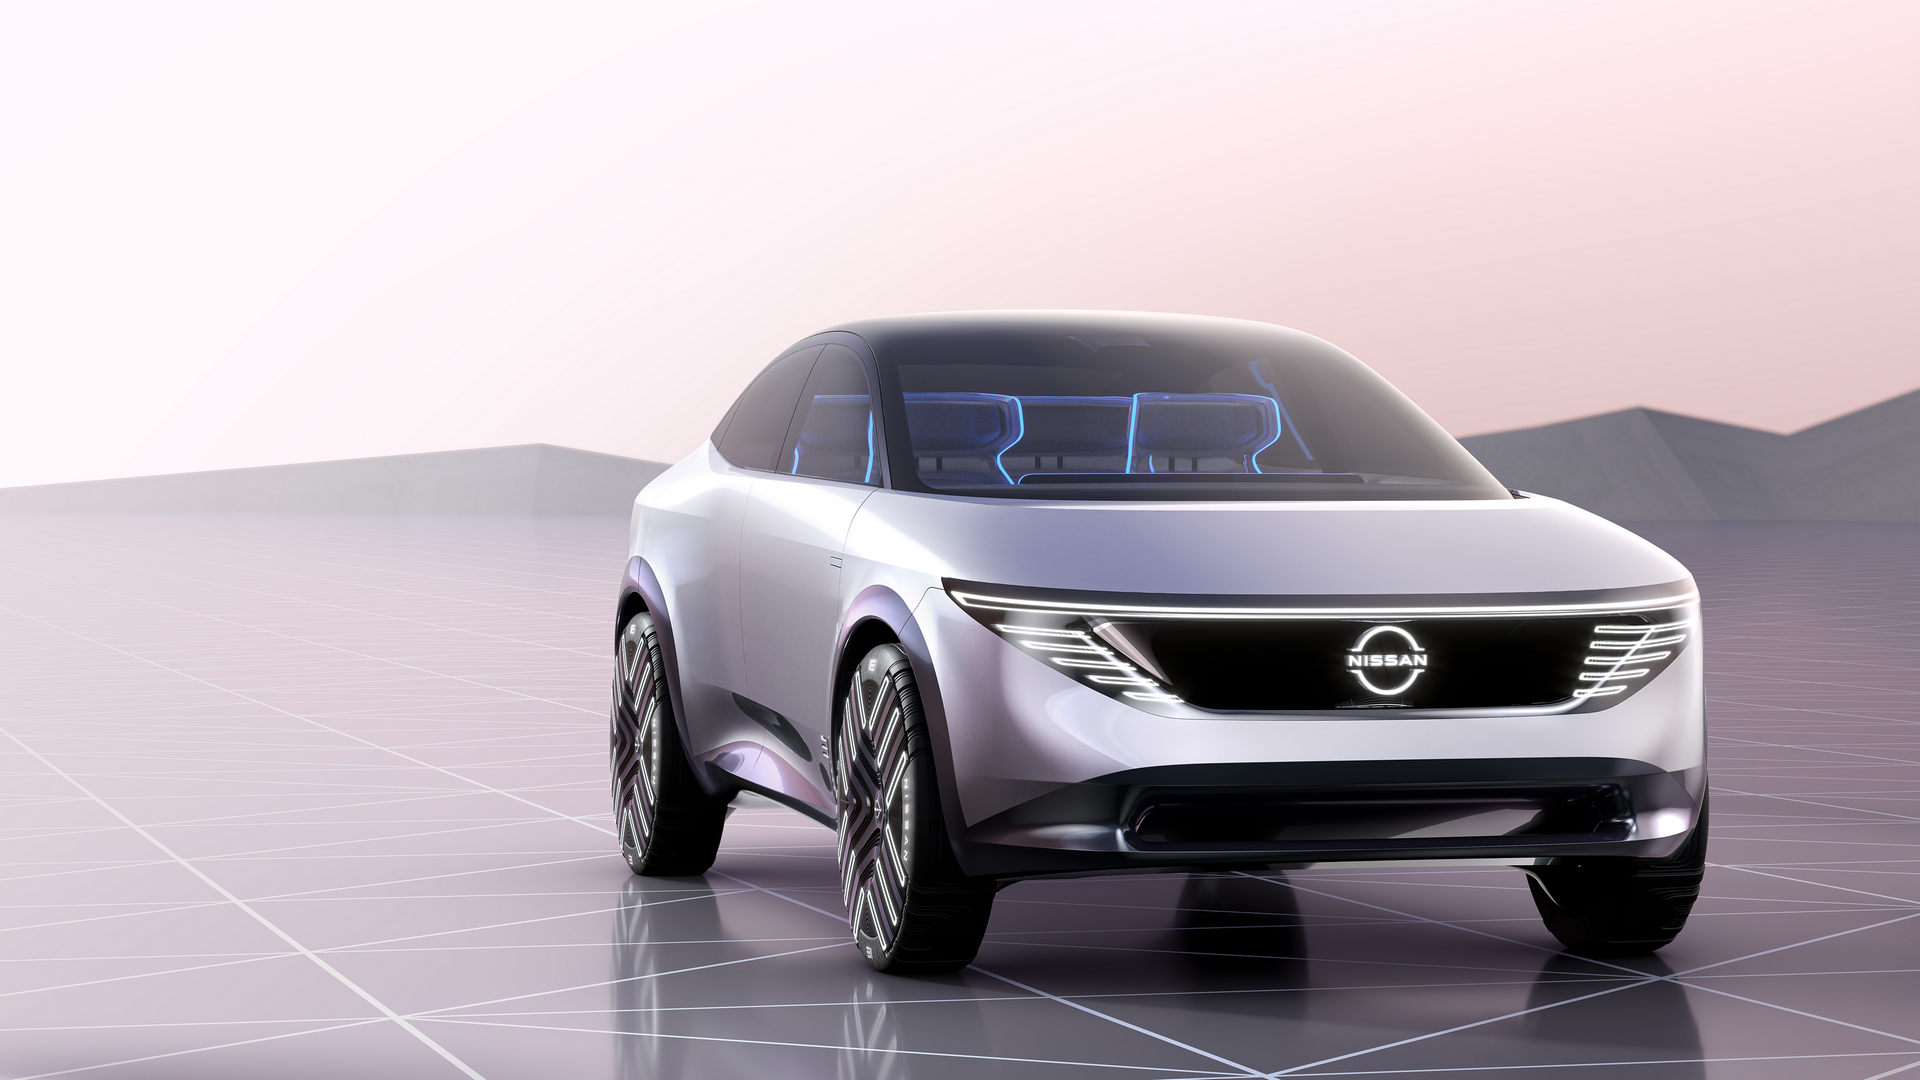 Nissan giới thiệu 4 mẫu concept xe điện cực ấn tượng nissan-chill-out-concept.jpg